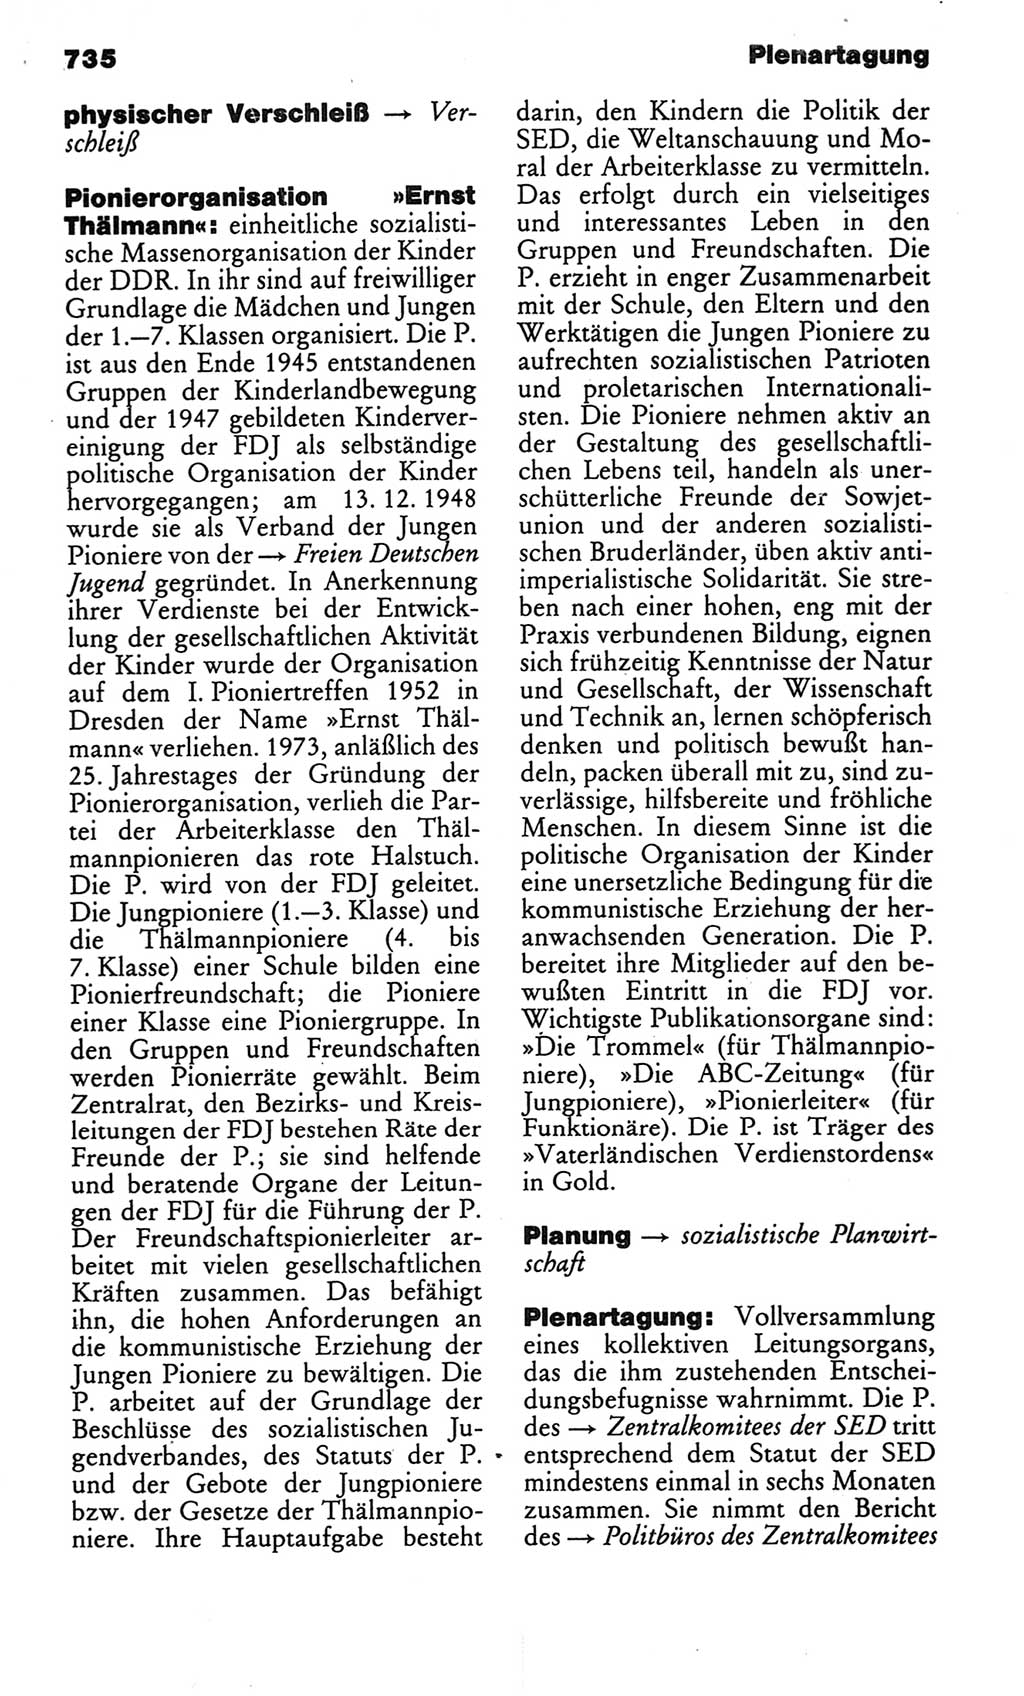 Kleines politisches Wörterbuch [Deutsche Demokratische Republik (DDR)] 1986, Seite 735 (Kl. pol. Wb. DDR 1986, S. 735)